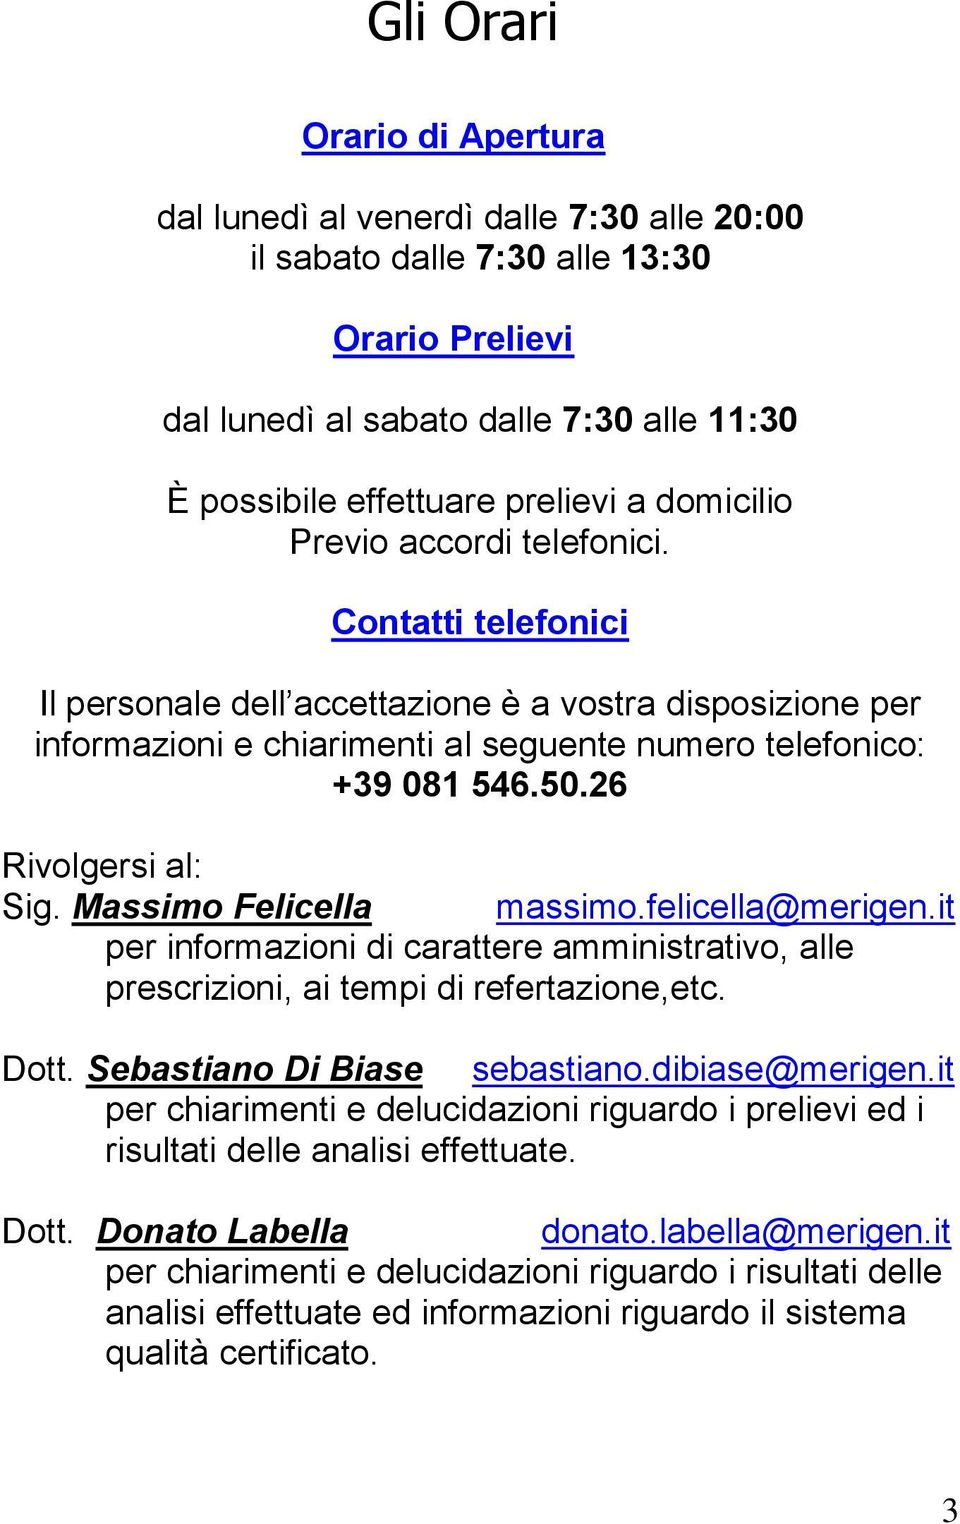 26 Rivolgersi al: Sig. Massimo Felicella massimo.felicella@merigen.it per informazioni di carattere amministrativo, alle prescrizioni, ai tempi di refertazione,etc. Dott.